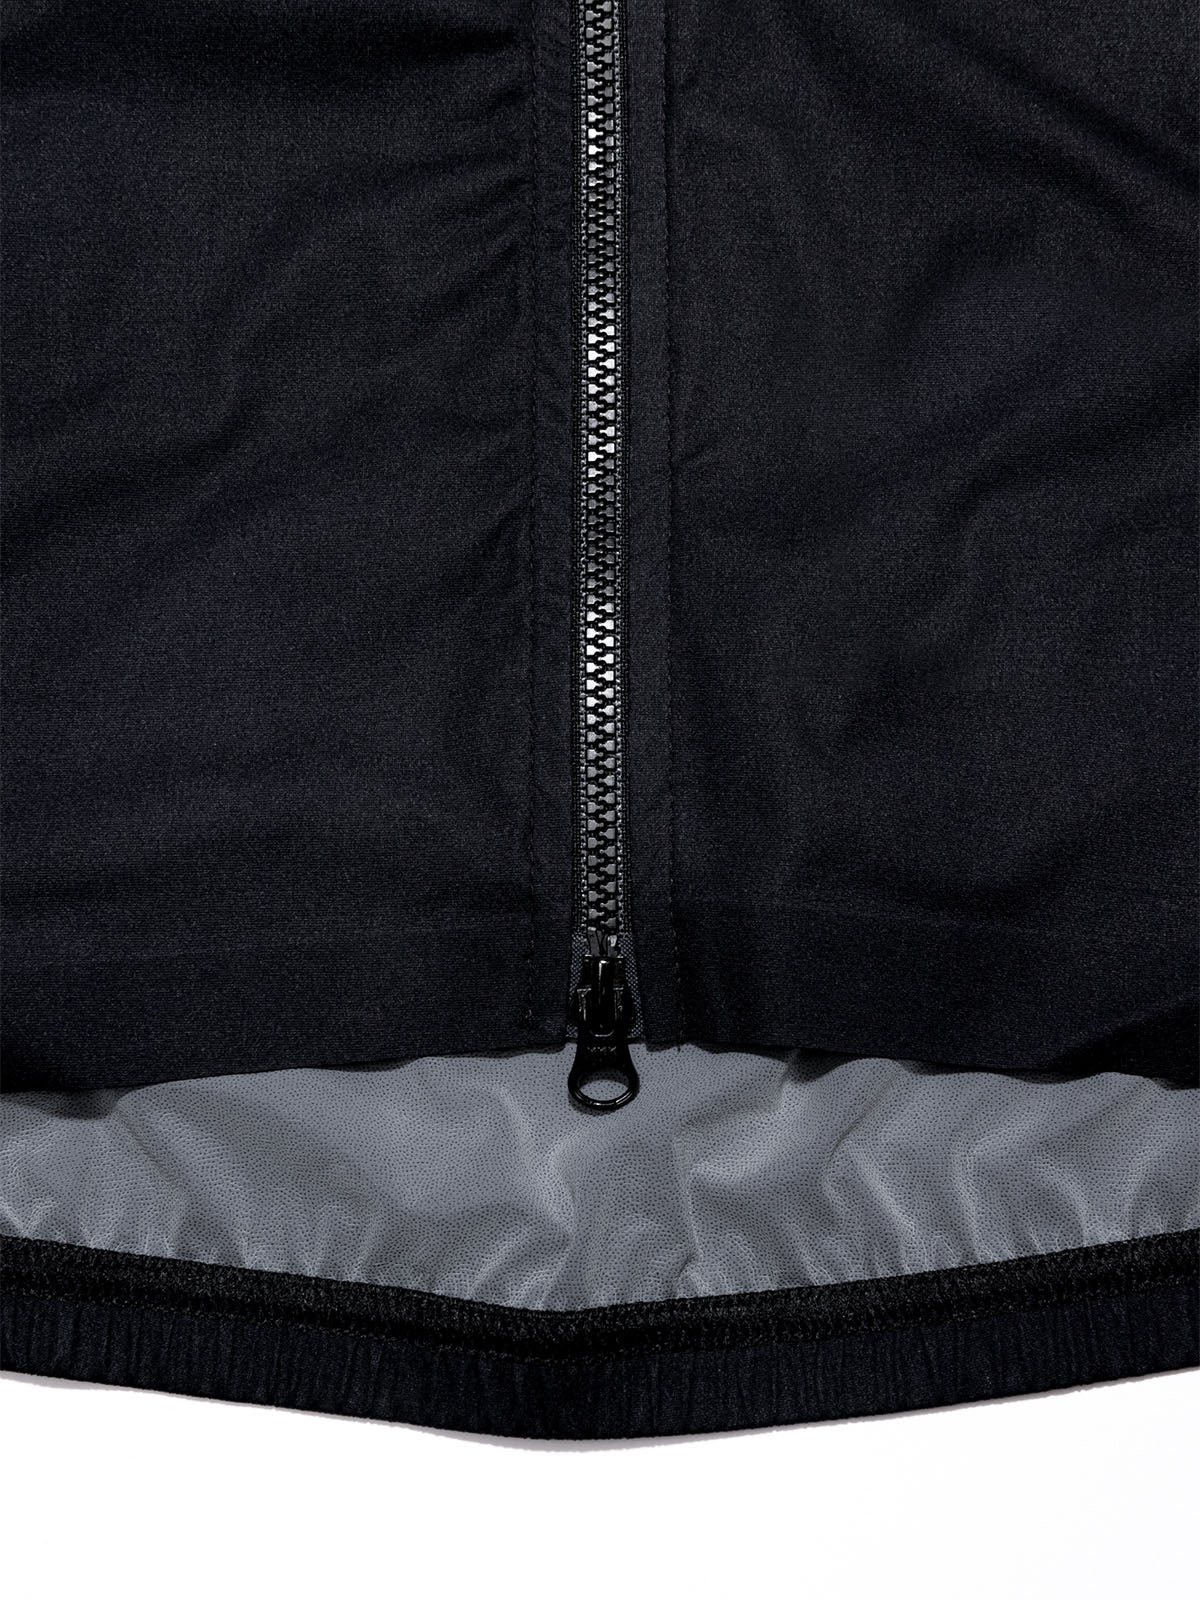 Altosphere Vest från Mission Workshop - vädertåliga väskor och tekniska kläder - San Francisco och Los Angeles - byggd för att tåla - garanterad för alltid